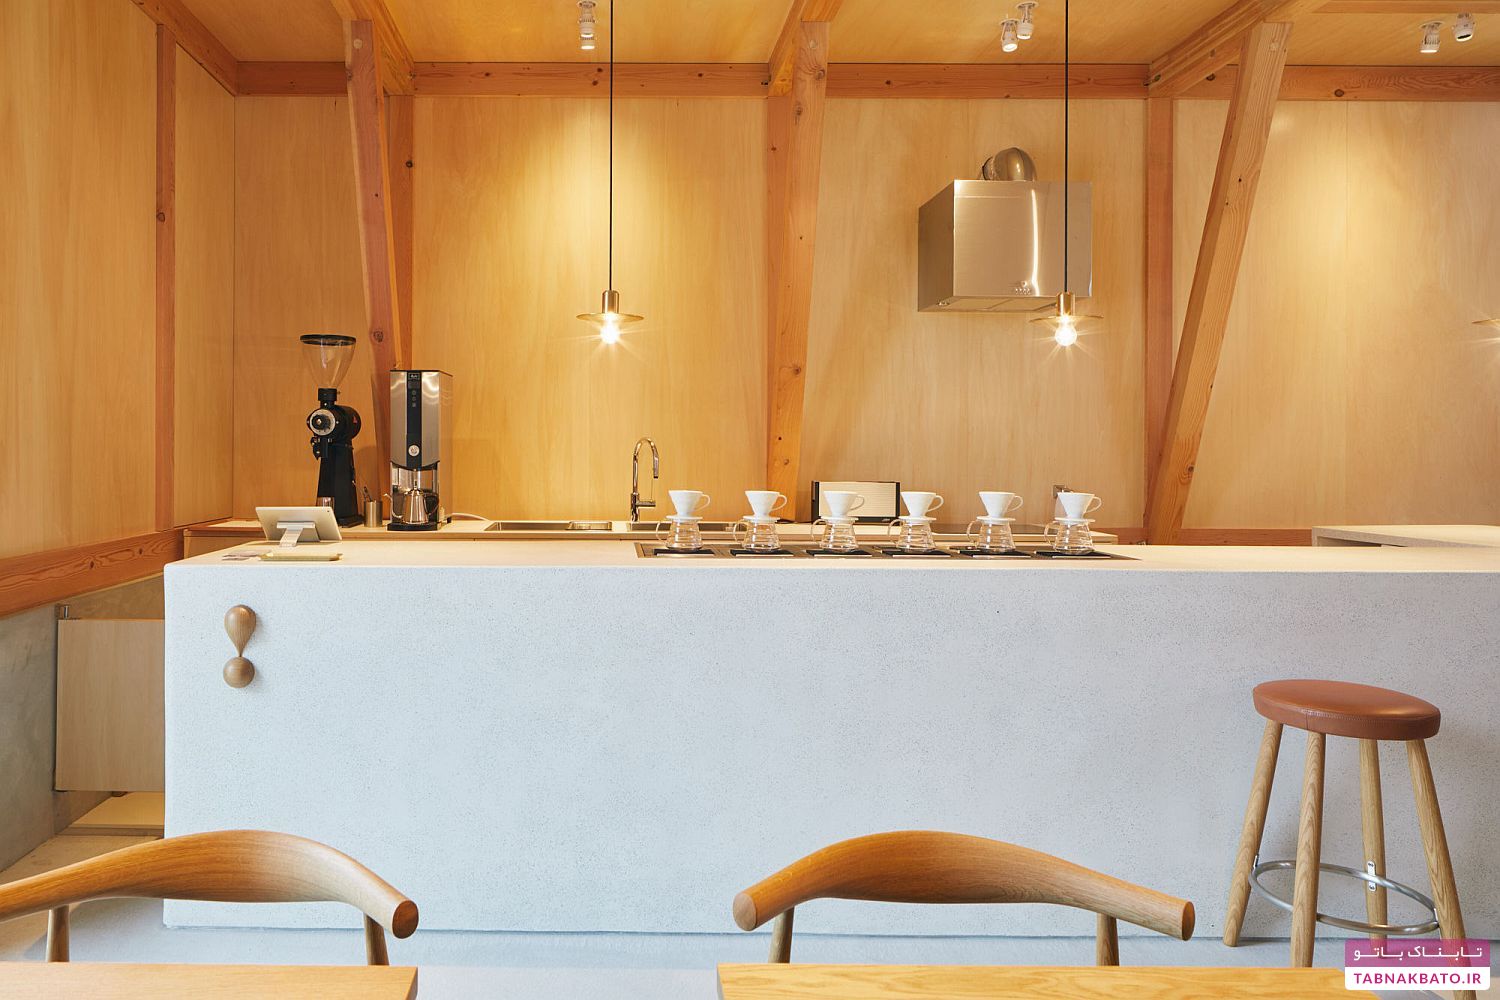 طراحی جالب و متفاوت یک کافه در توکیو